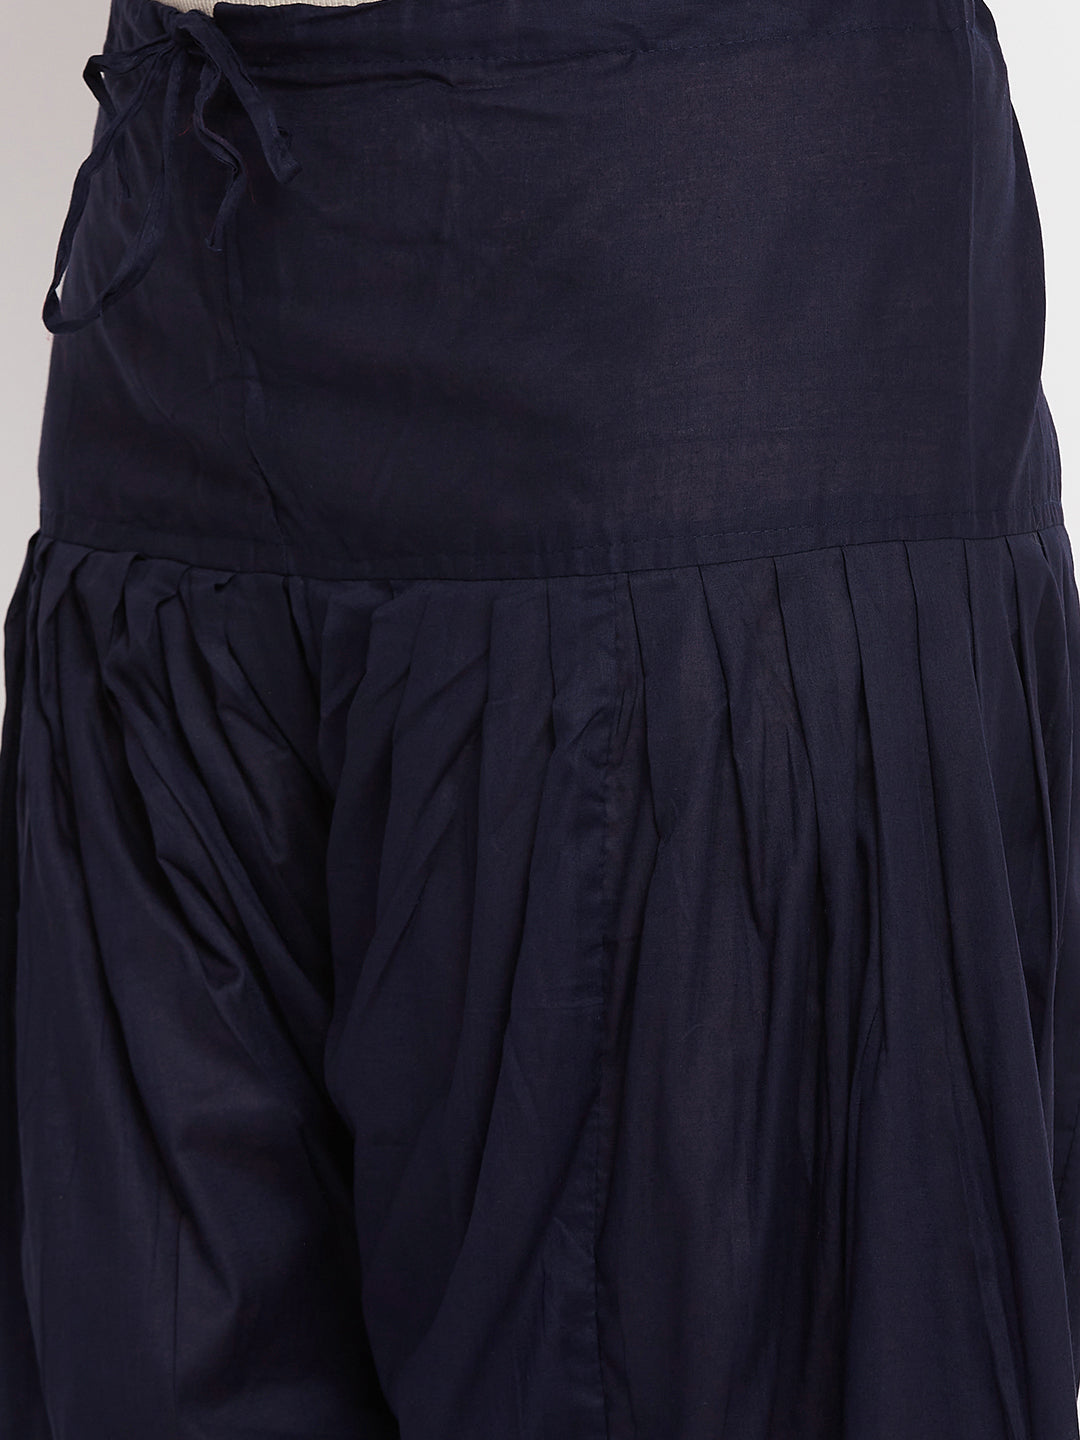 Wahe-NOOR Women's Navy Blue Solid Pure Cotton Salwar - Distacart